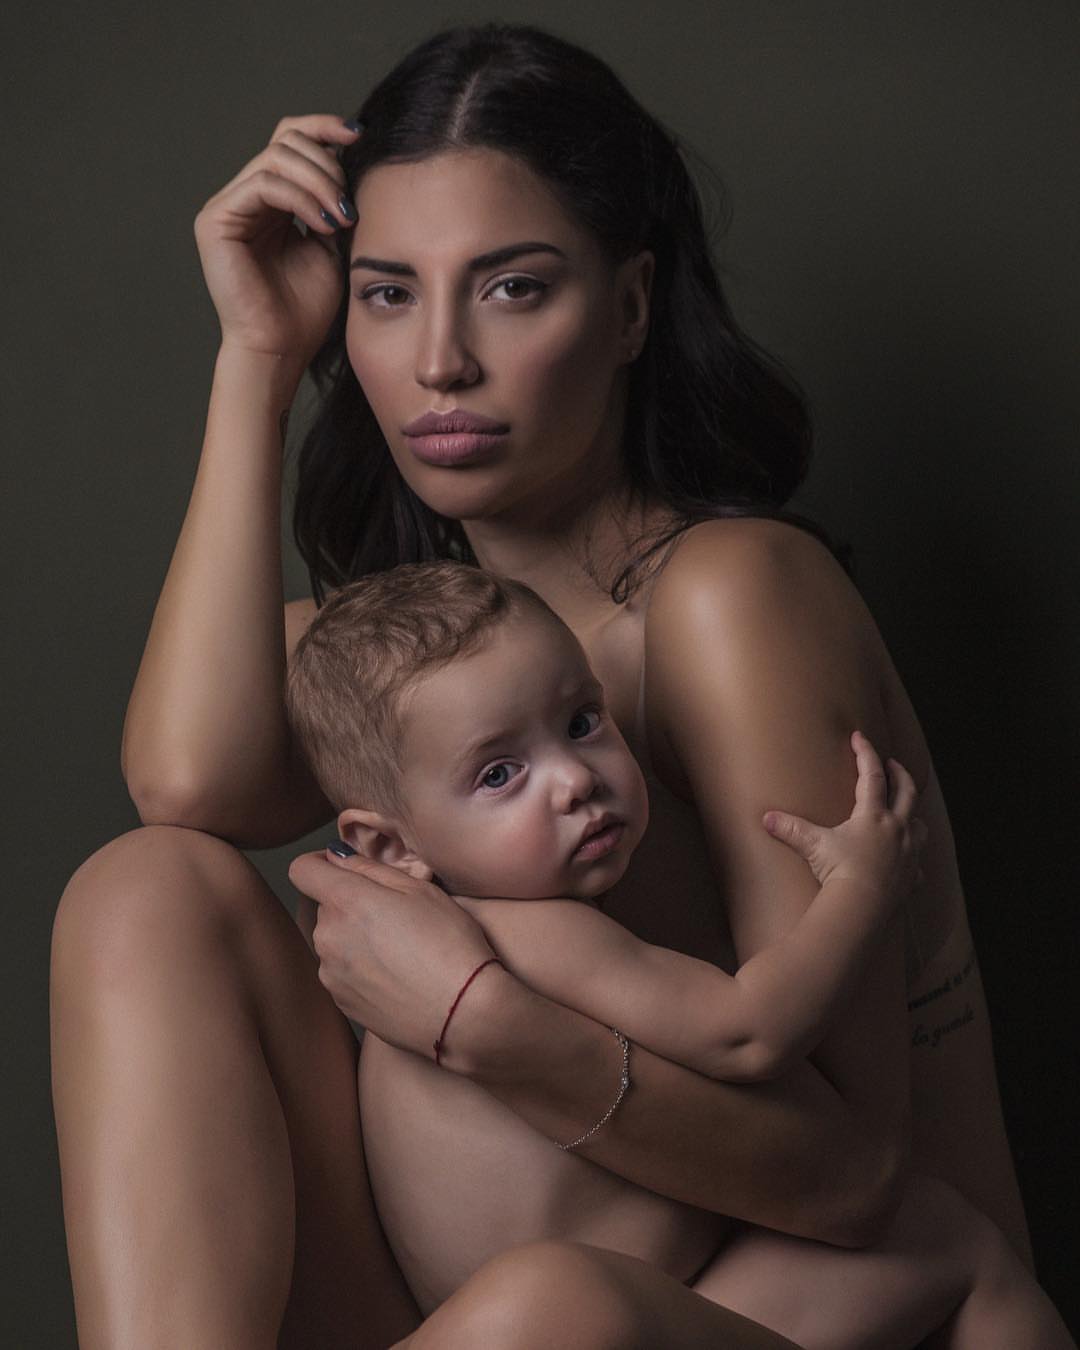 фото голая мама и ребенок (120) фото